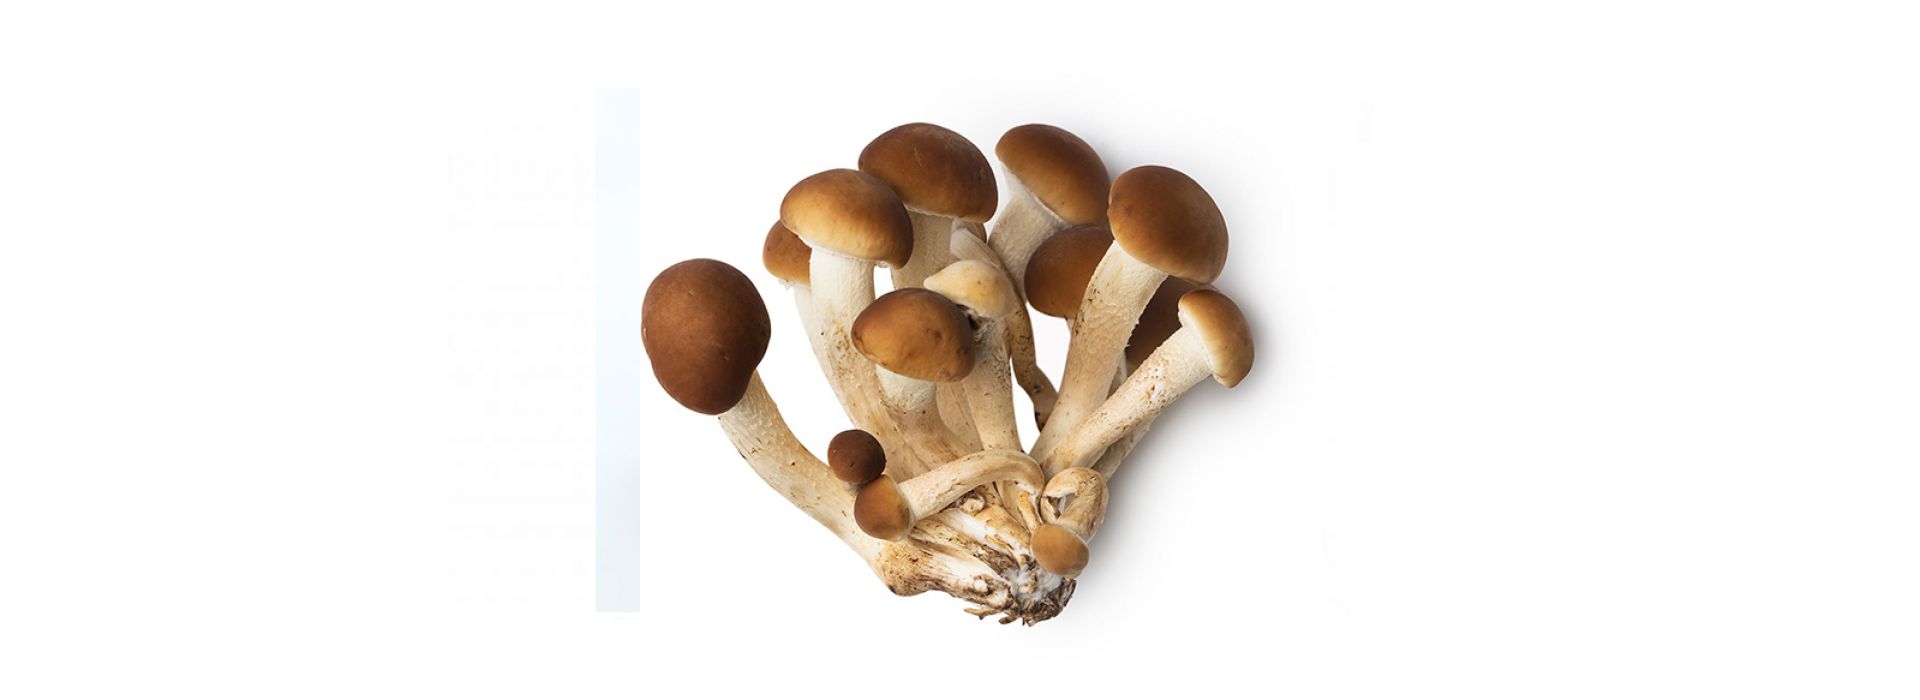 Mushroom Pioppino